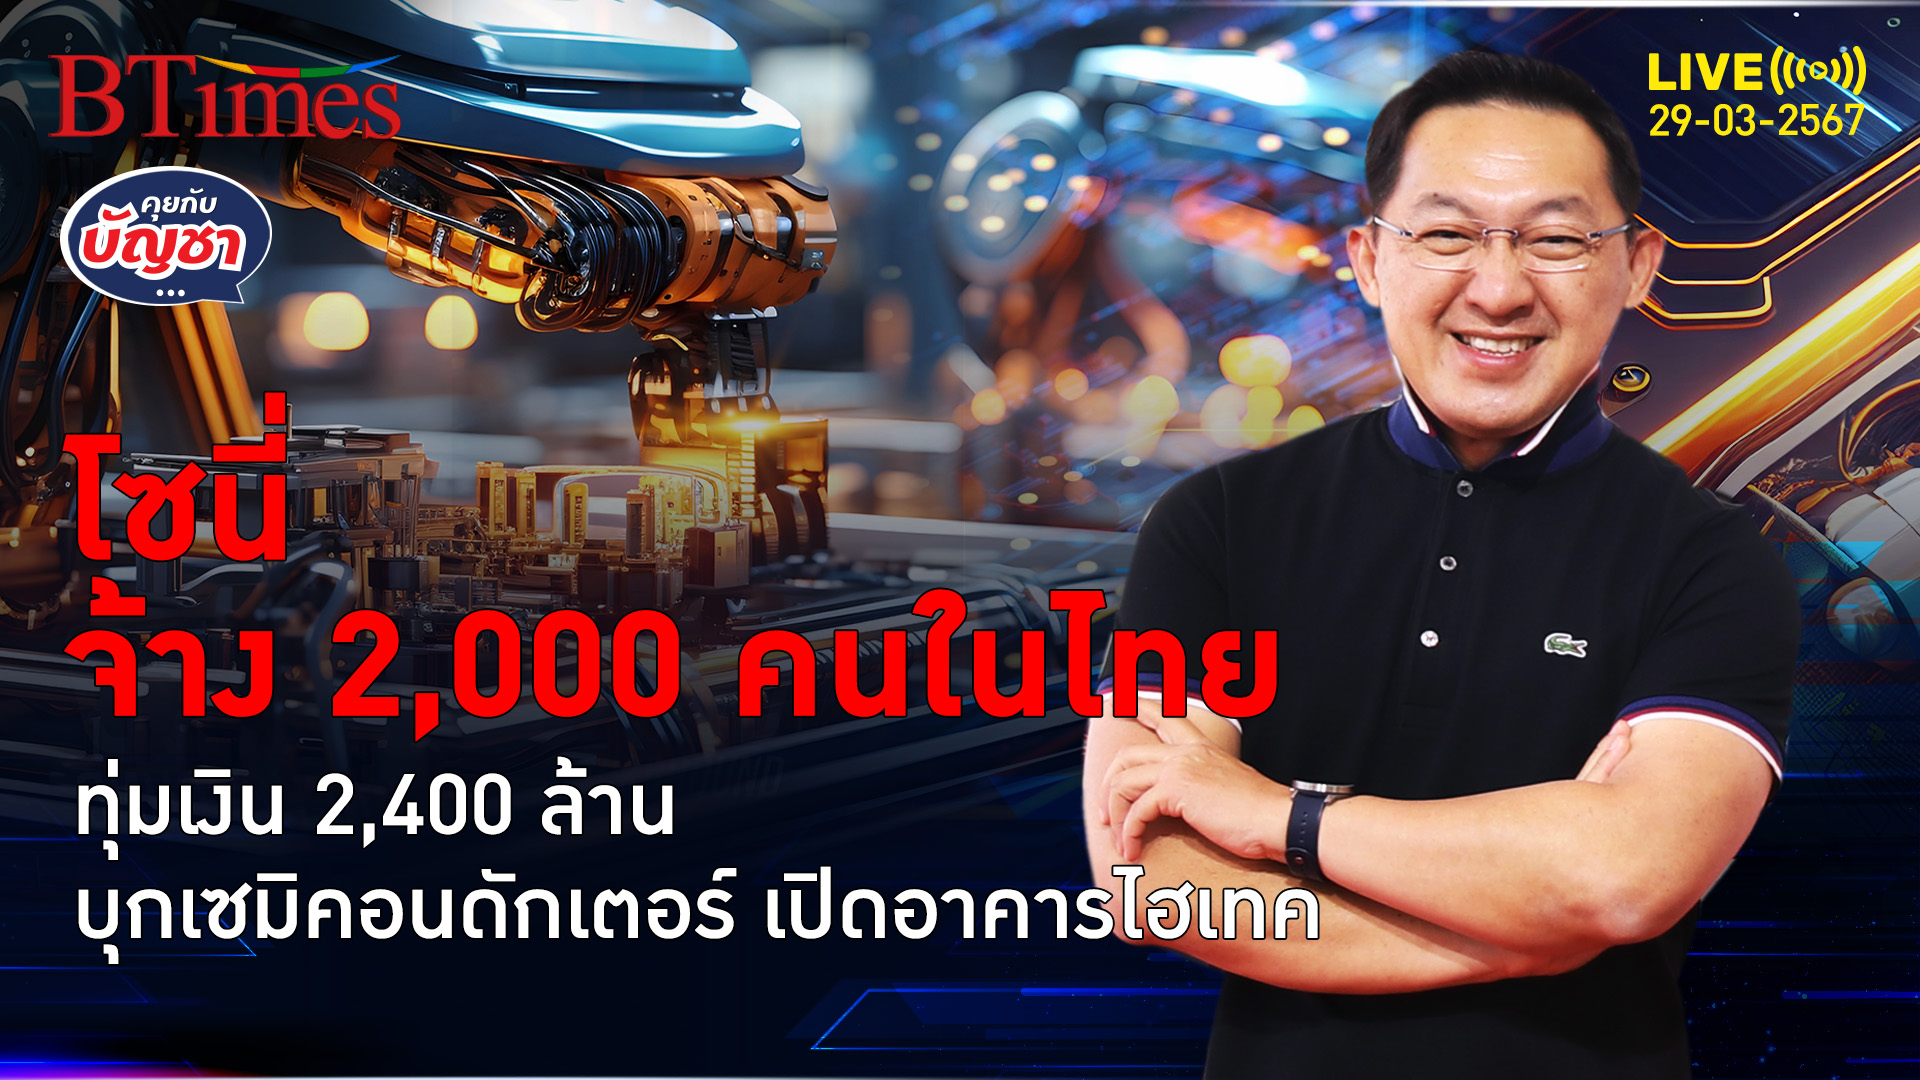 โซนี่ทุ่ม 2,400 ล้านเปิดอาคารผลิตเซ็นเซอร์ จ้างงานใหม่คนไทย 2,000 คน | คุยกับบัญชา l 29 มี.ค. 67